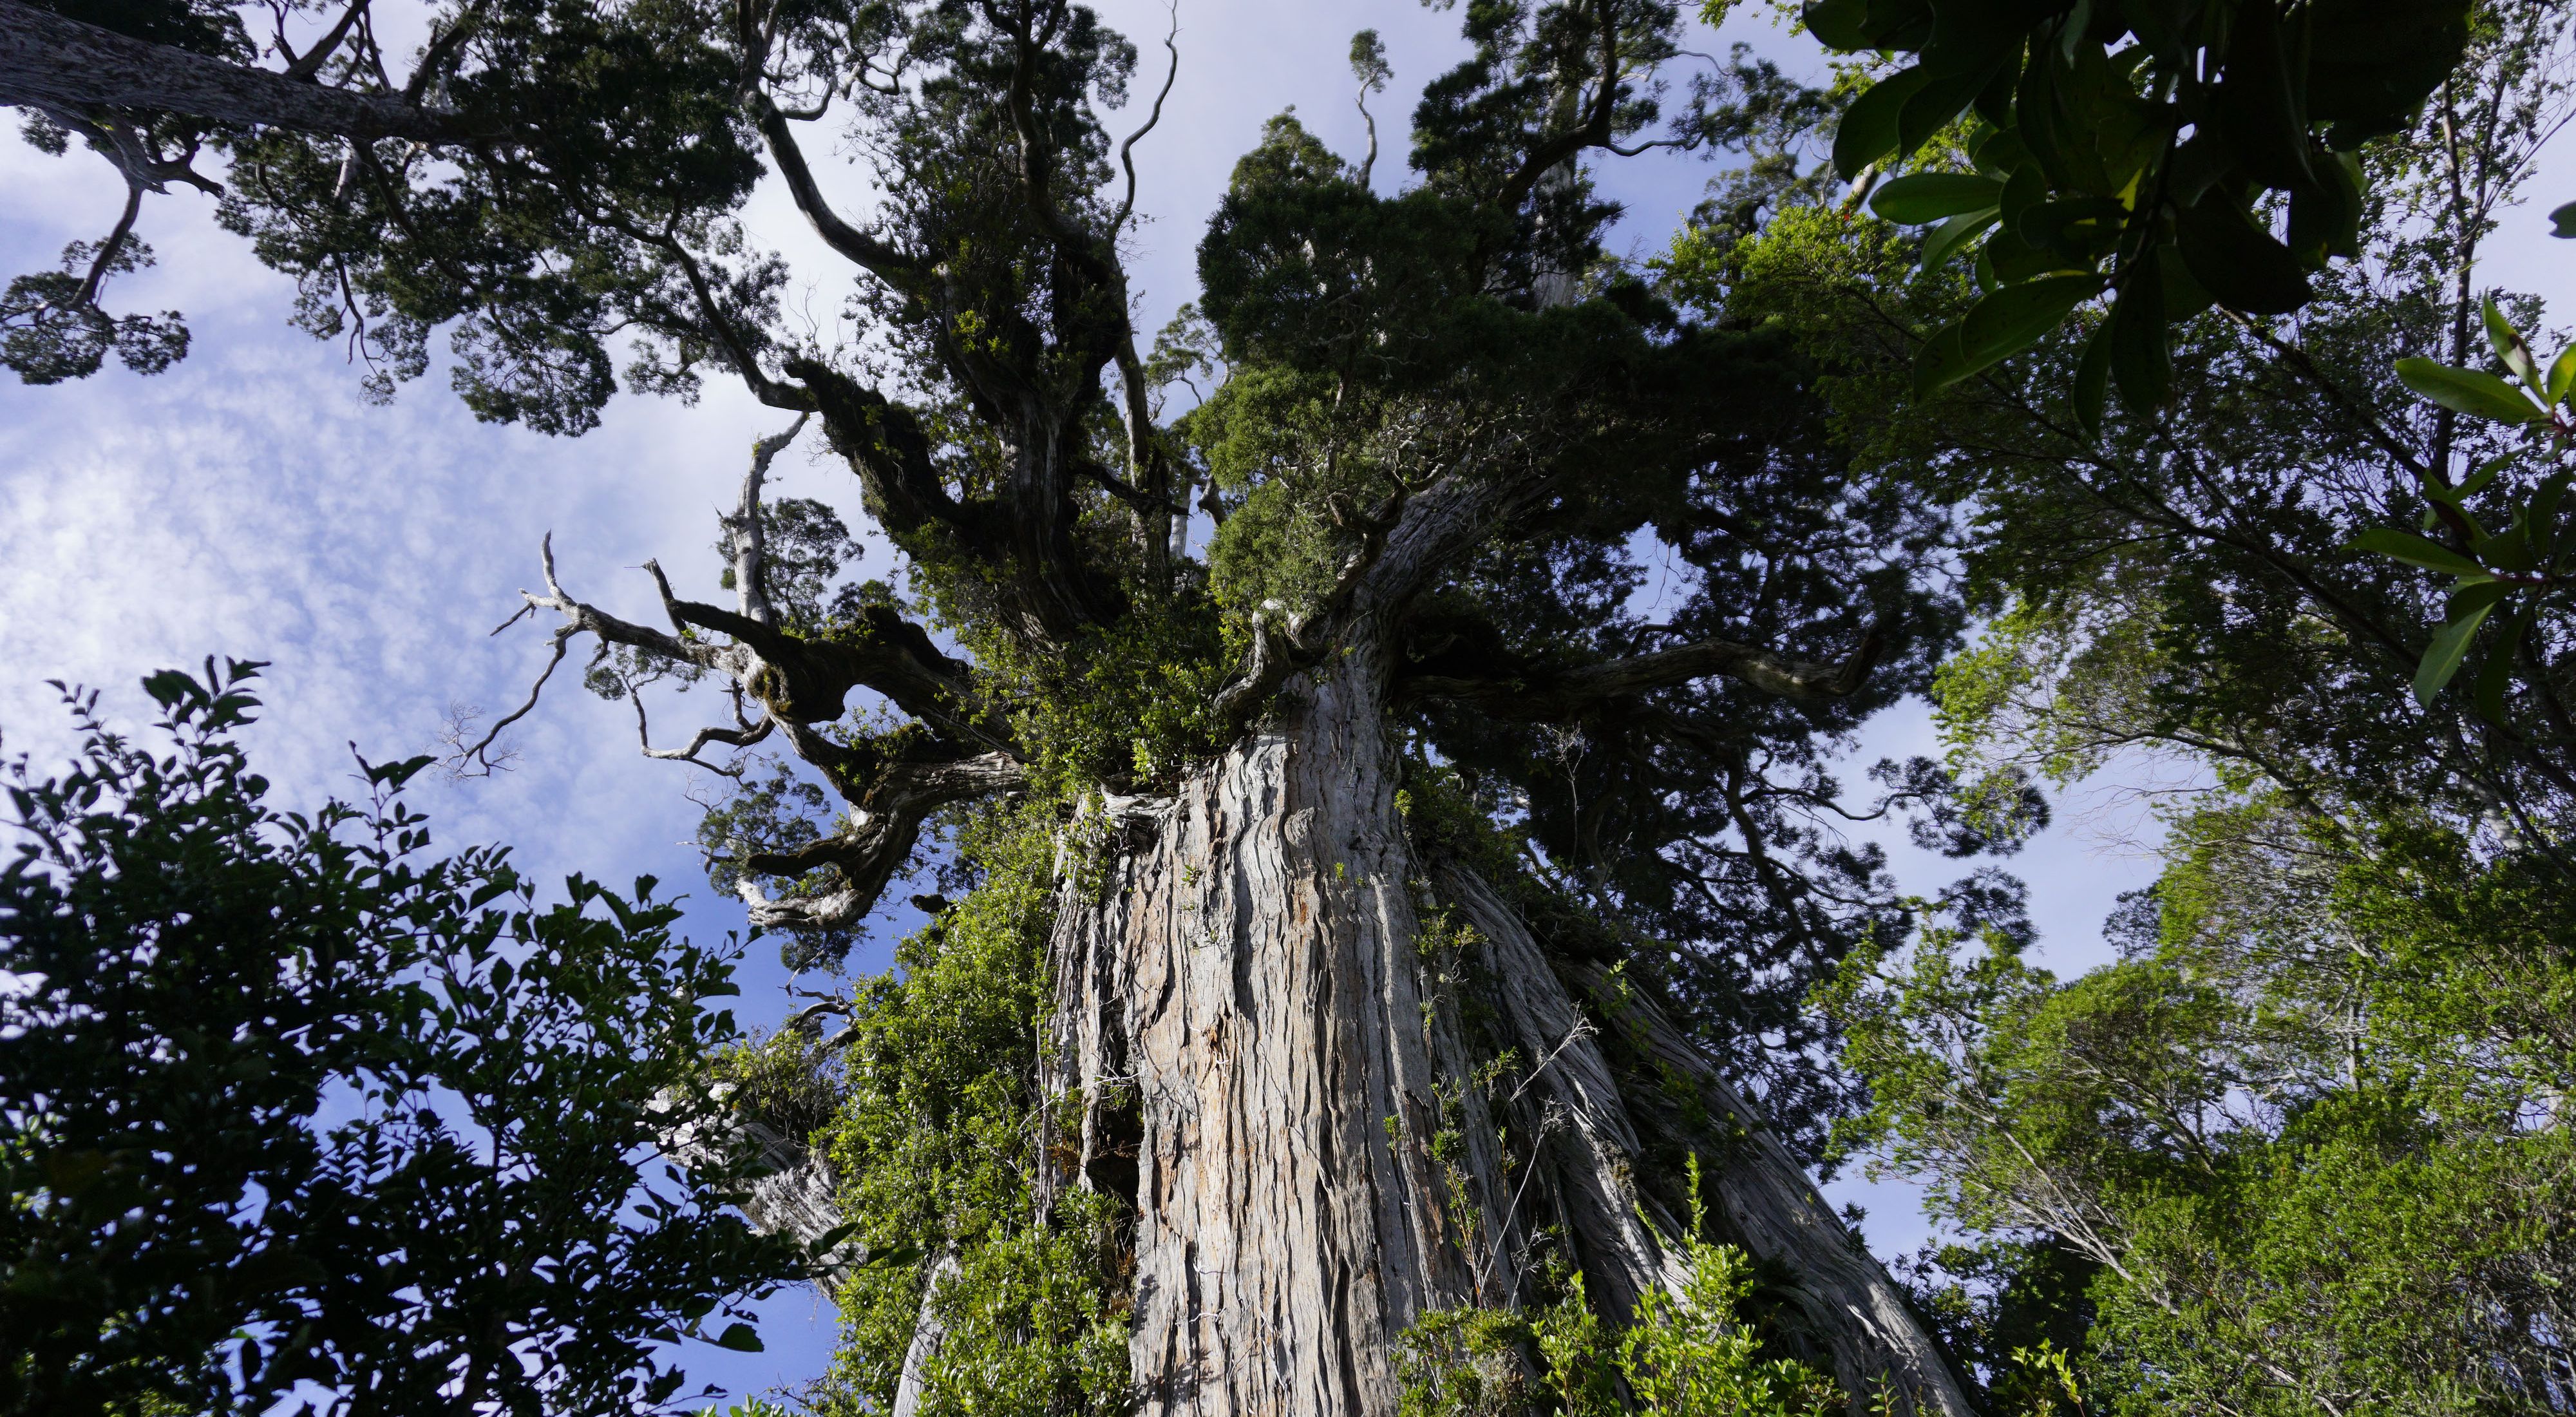 Vista mirando hacia la cima de un árbol gigante y antiguo con una gruesa corteza gris.